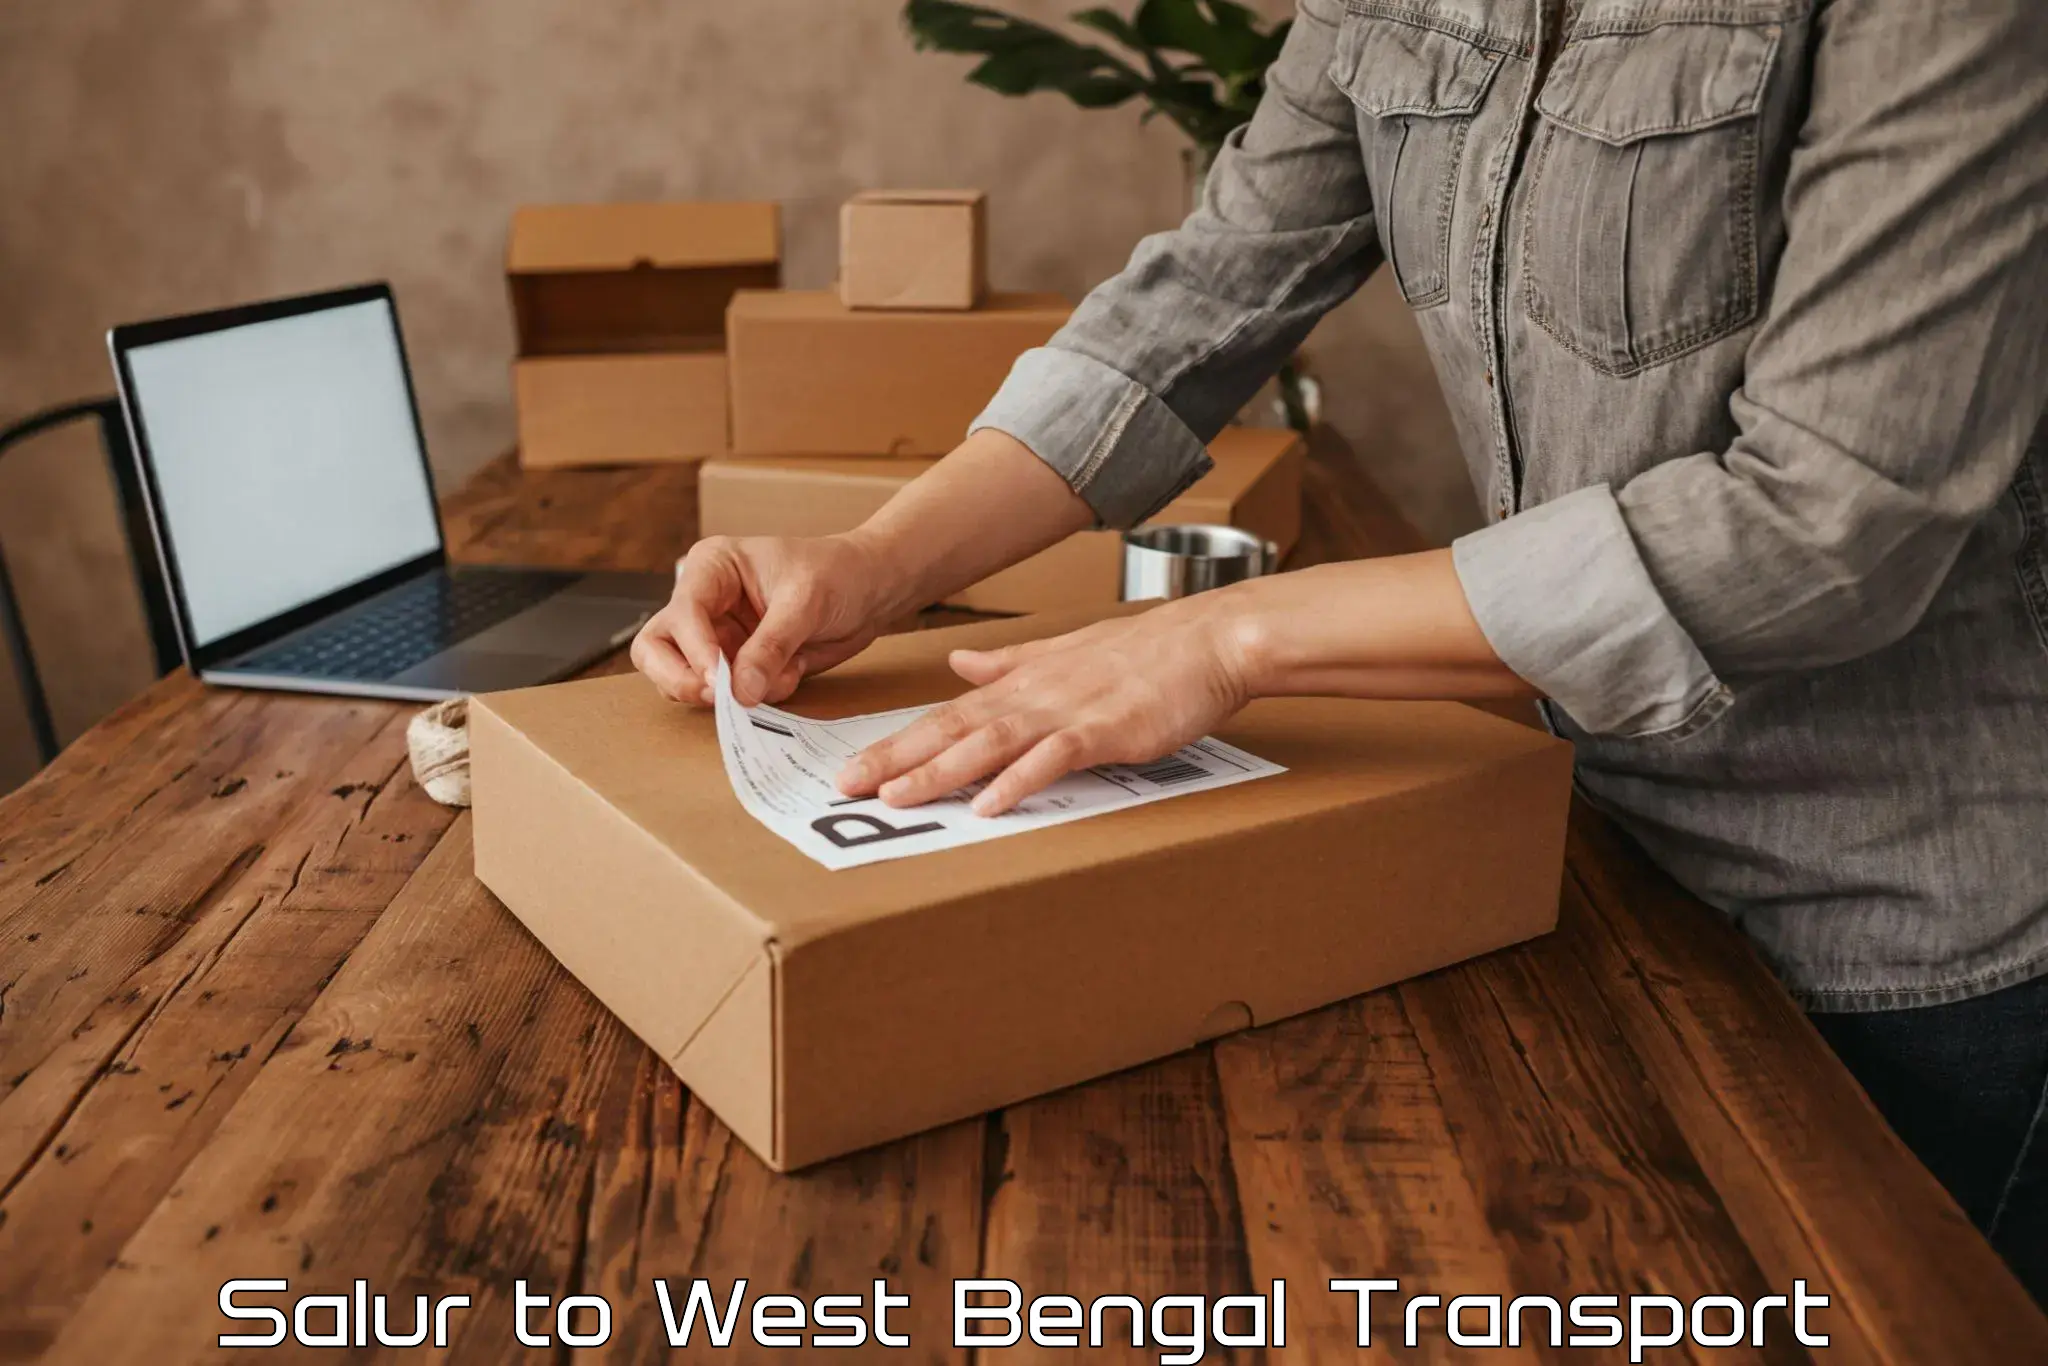 Online transport service Salur to Bagnan